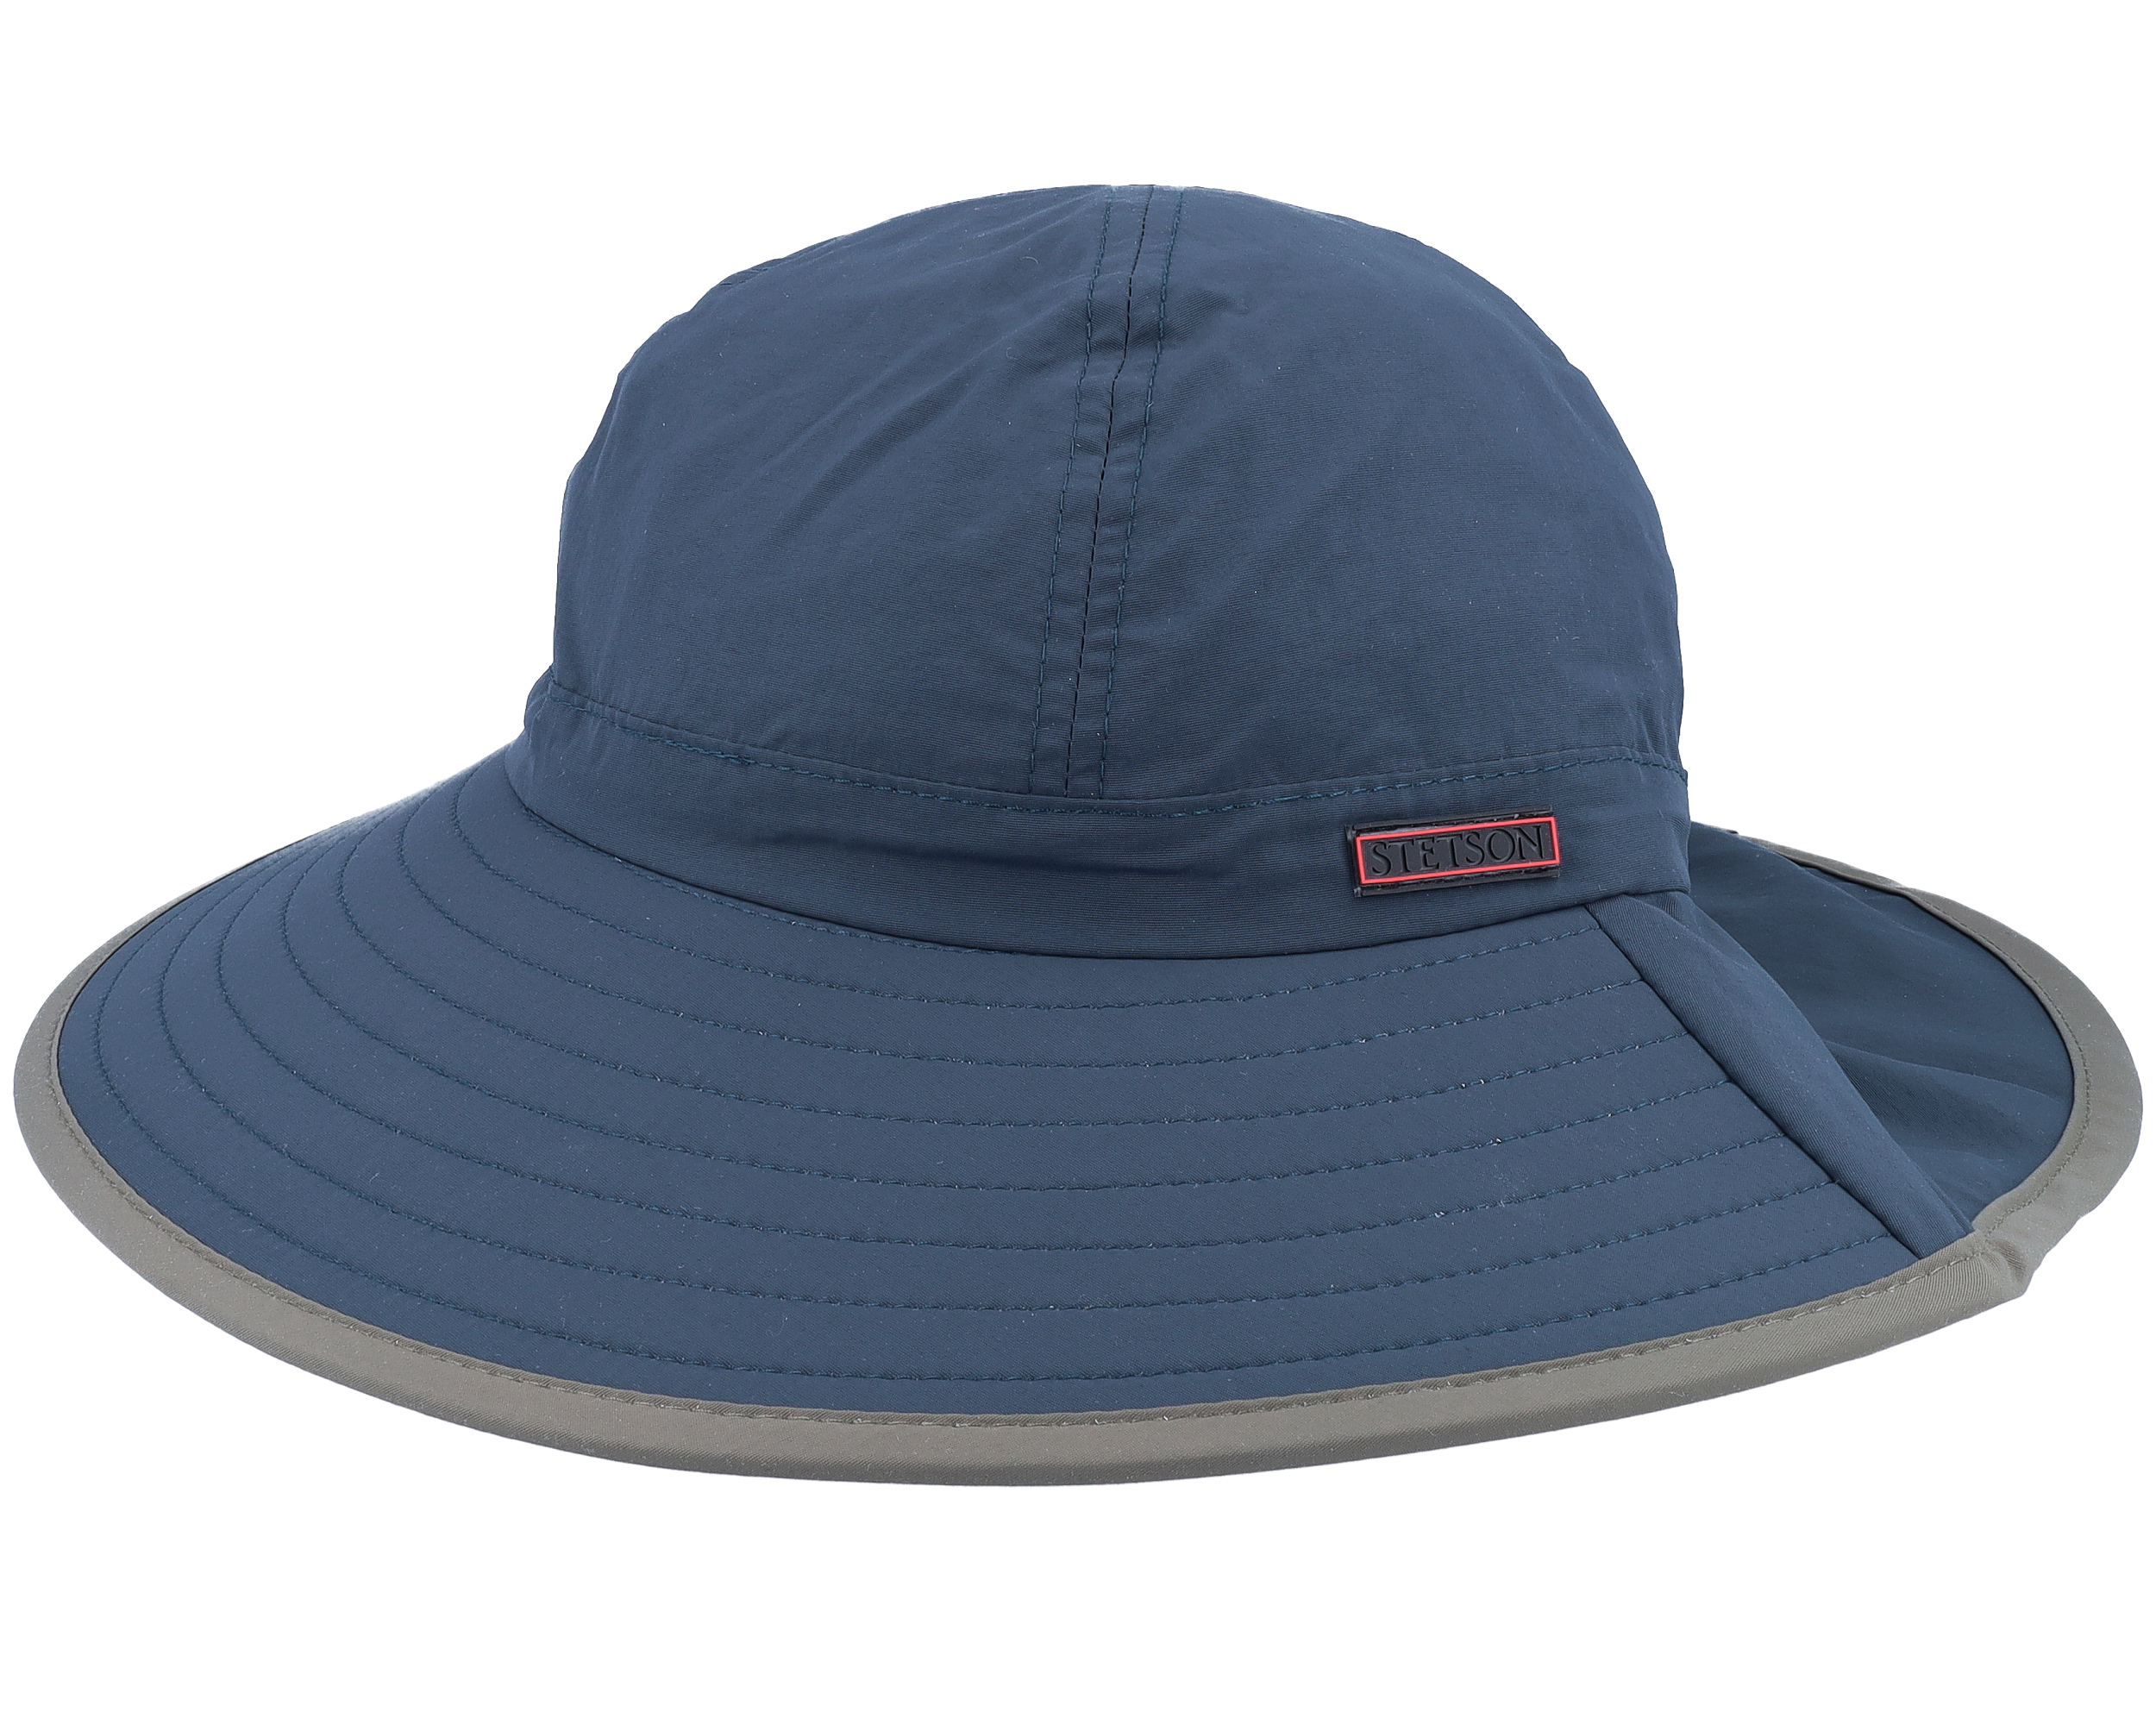 Outdoor Navy Bucket - Stetson 帽子| Hatstore.com